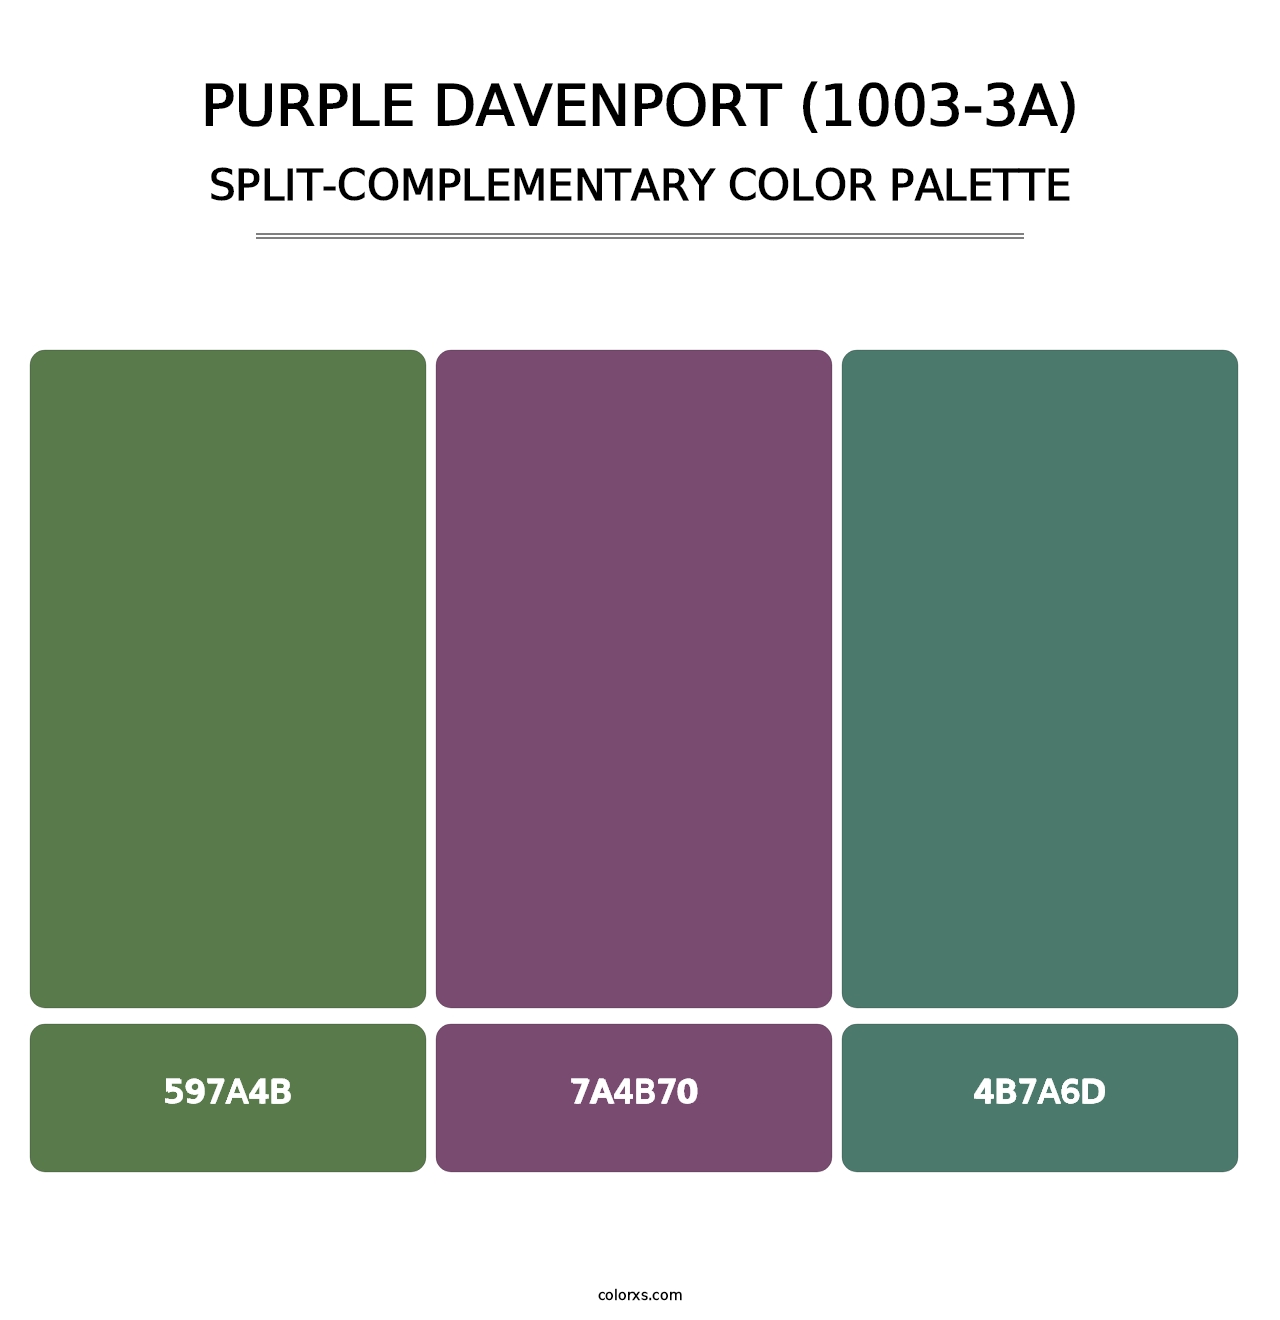 Purple Davenport (1003-3A) - Split-Complementary Color Palette